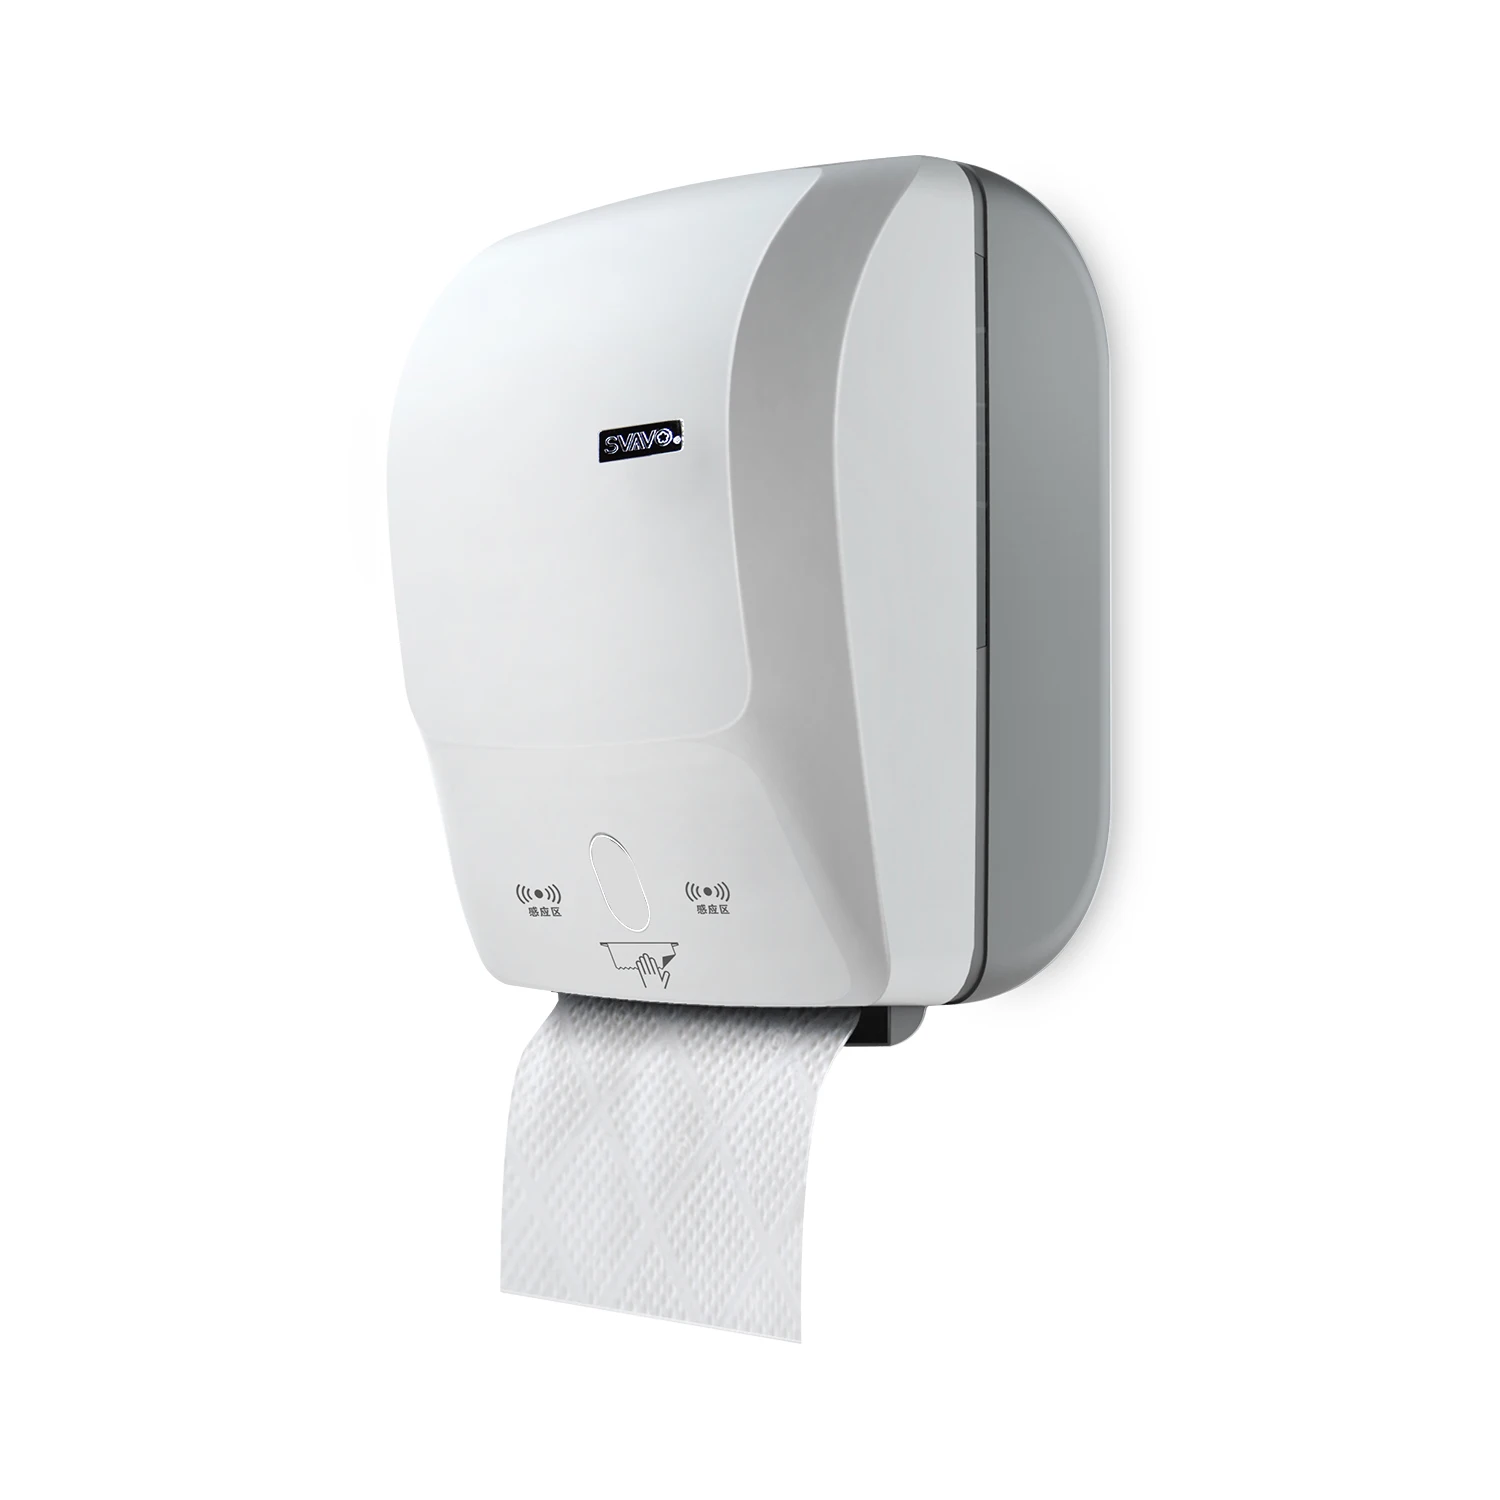 SVAVO автоматическая резка Бумажных Полотенец Диспенсер настенный человеческий заряд Индукционная резка бумажный держатель для кухни ванной комнаты - Цвет: White-Grey